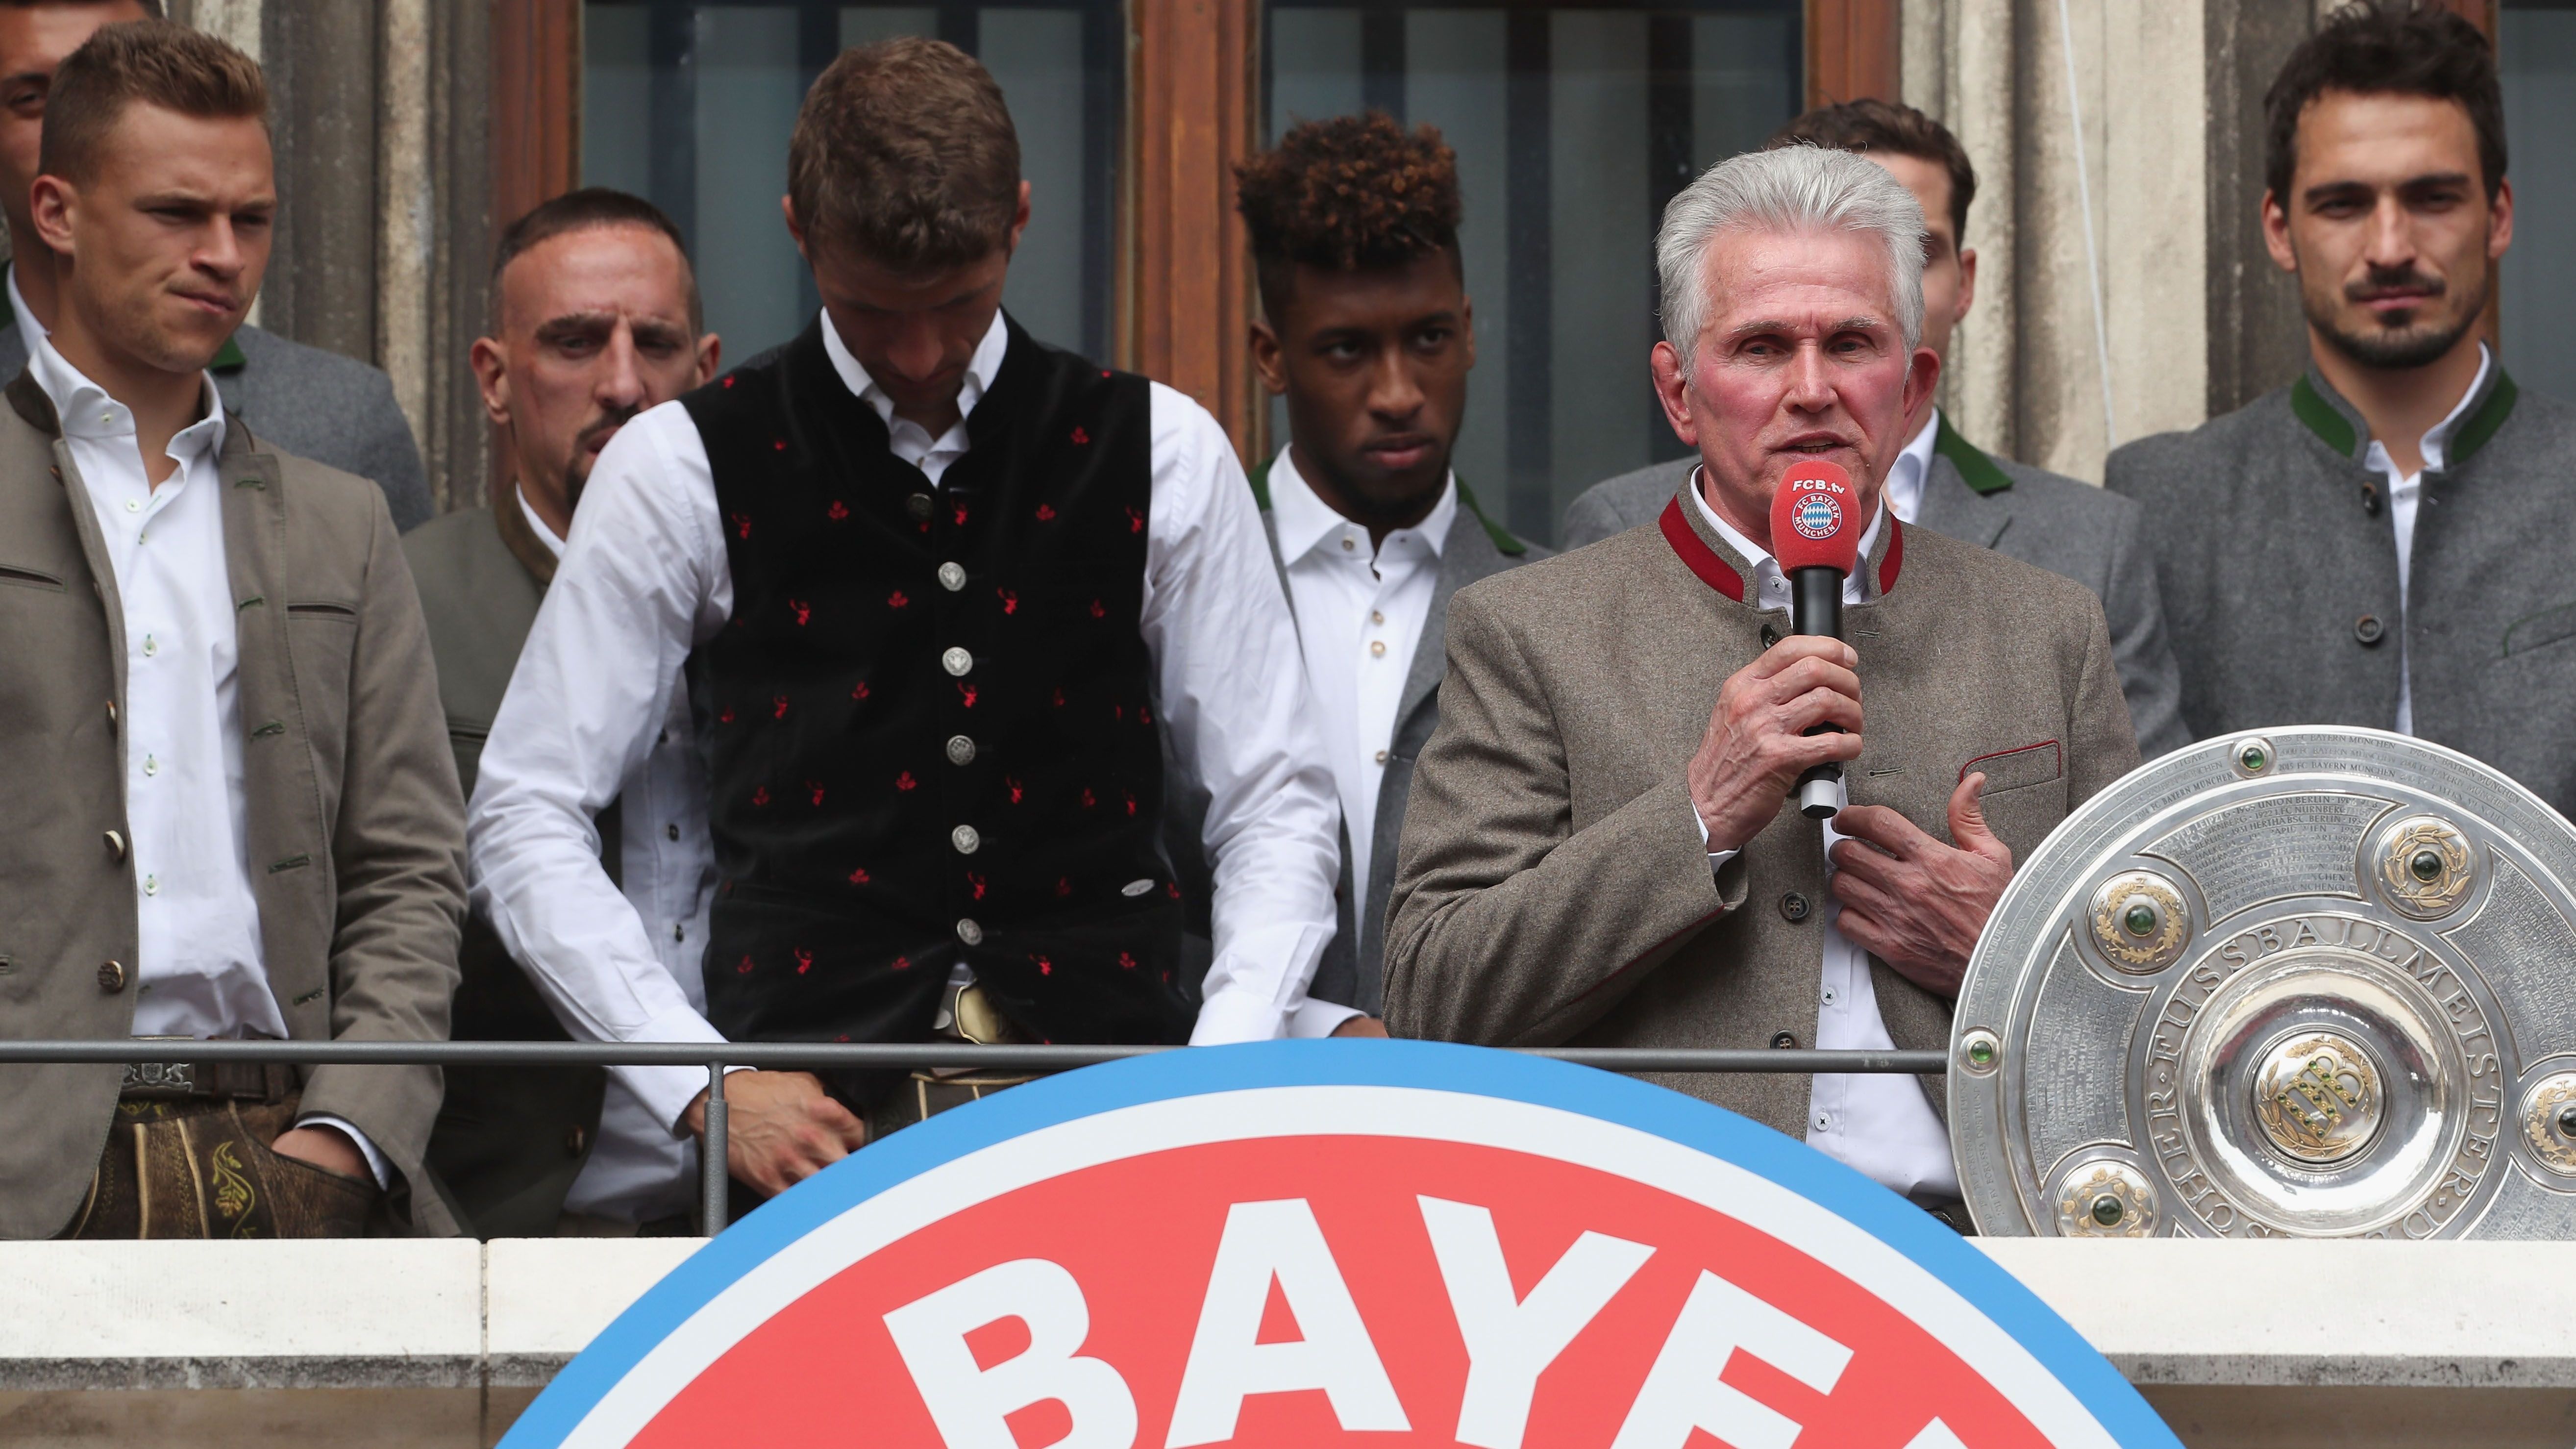 <strong>Jupp Heynckes (Karriereende)</strong><br>Nach seinem dritten Engagement beim FC Bayern beendete Heynckes 2013 mit dem Triple seine Karriere. Nach Hoeneß'schen Hilferufen nach Ancelottis Entlassung im Herbst 2017 ließ sich "Don Jupp" noch einmal überreden und holte noch ein letztes Mal die Meisterschaft. Seit 2018 ist endgültig Ruhehstand angesagt.